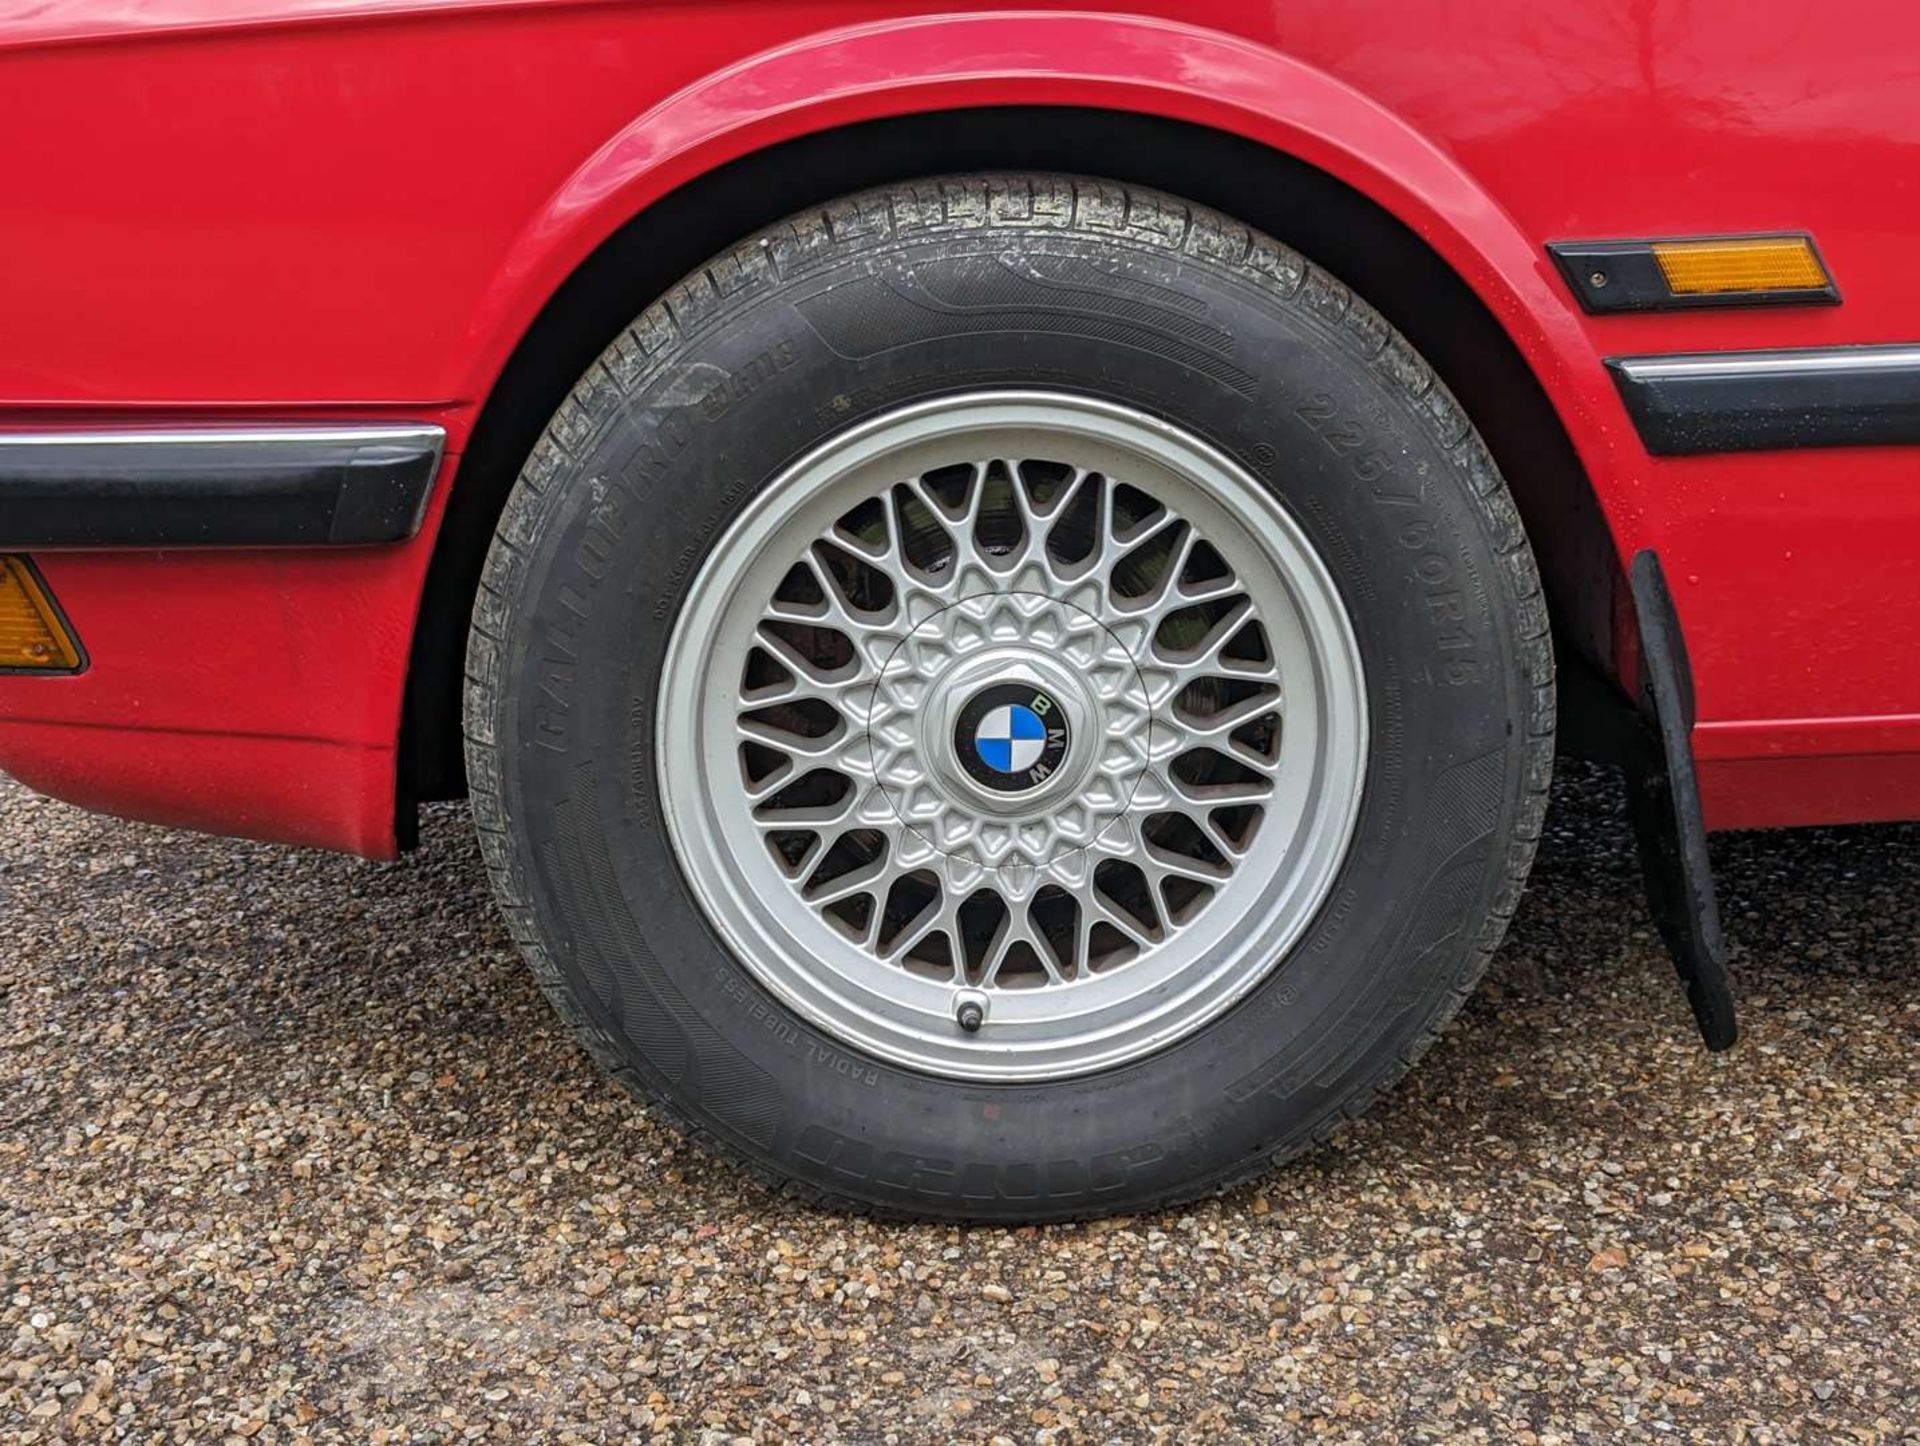 1987 BMW E28 525 E LUX AUTO - Image 16 of 30